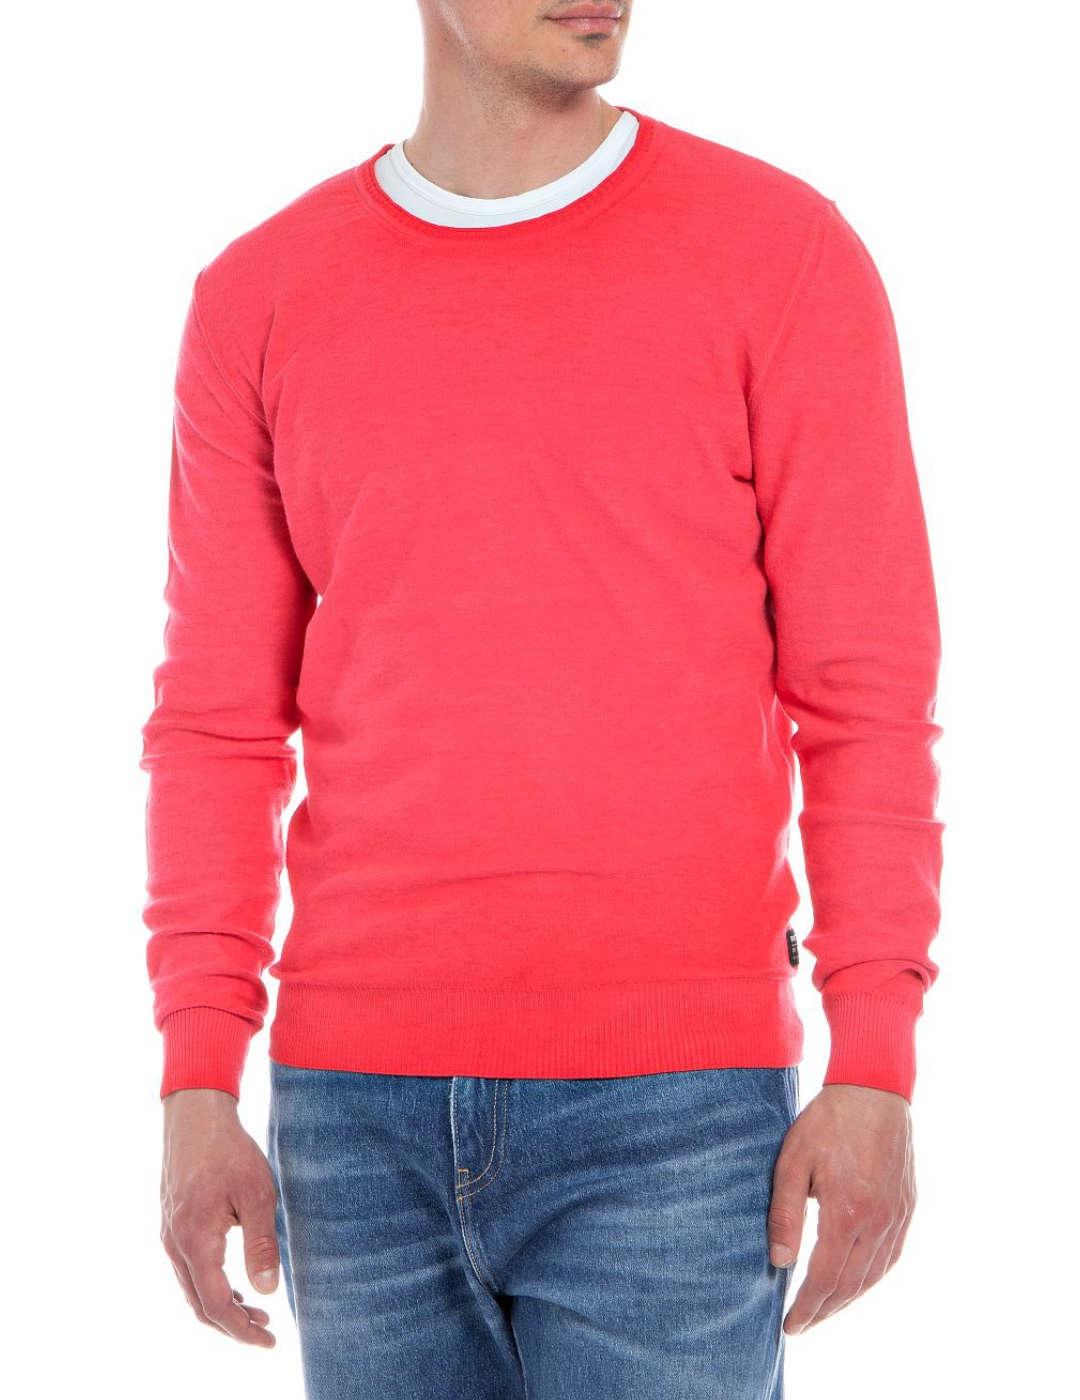 Jersey Replay rosa fresa regular cuello redondo para hombre